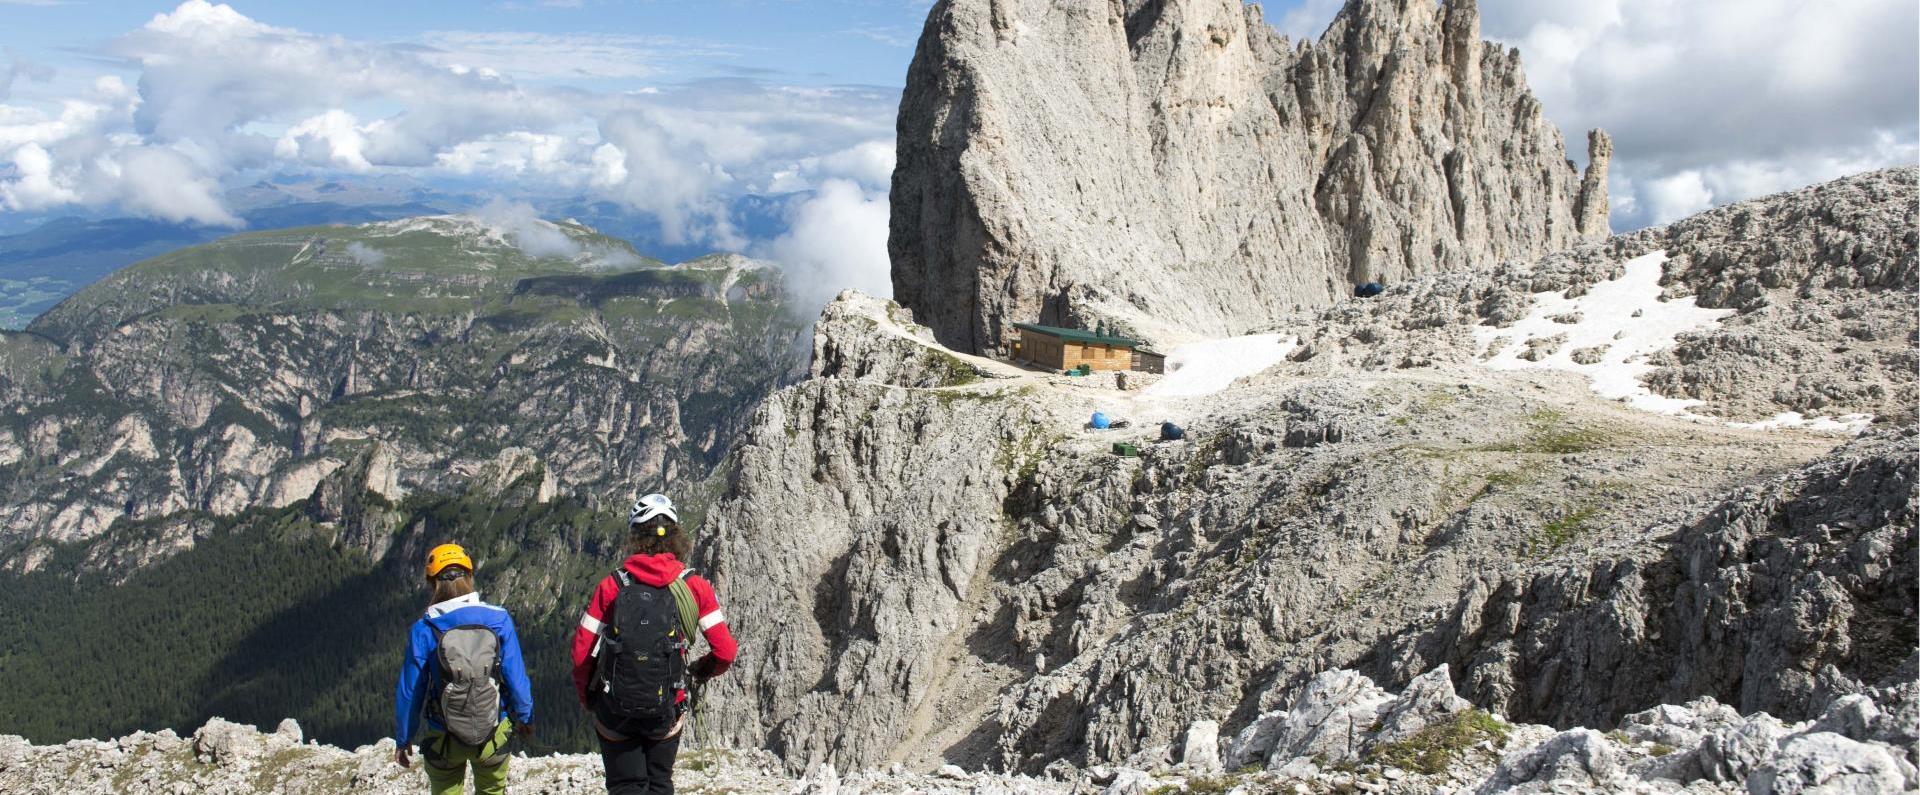 Tour di arrampicata intorno al massiccio del Catinaccio nelle Dolomiti